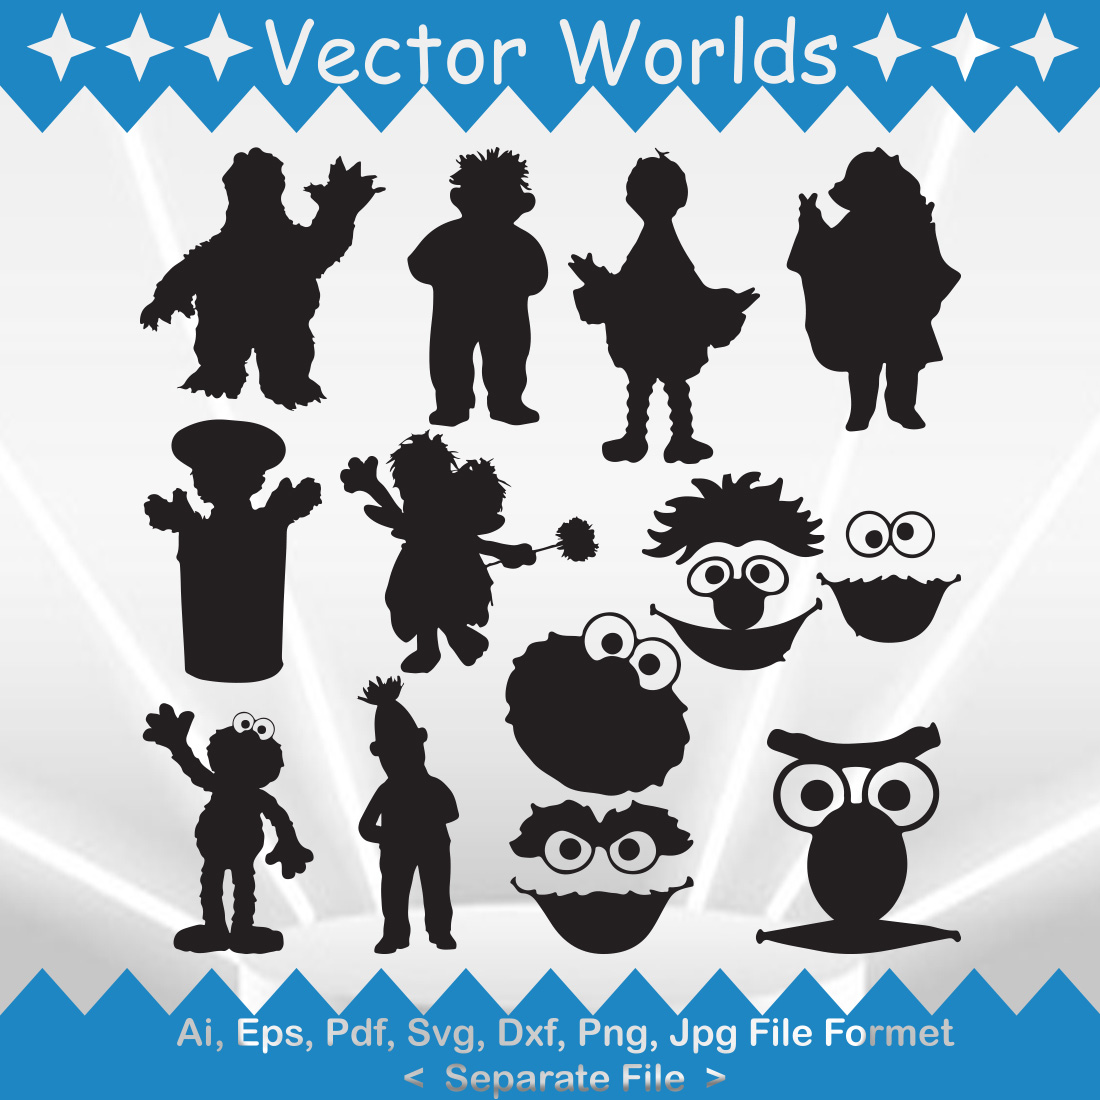 Sesame Street SVG Vector Design preview image.